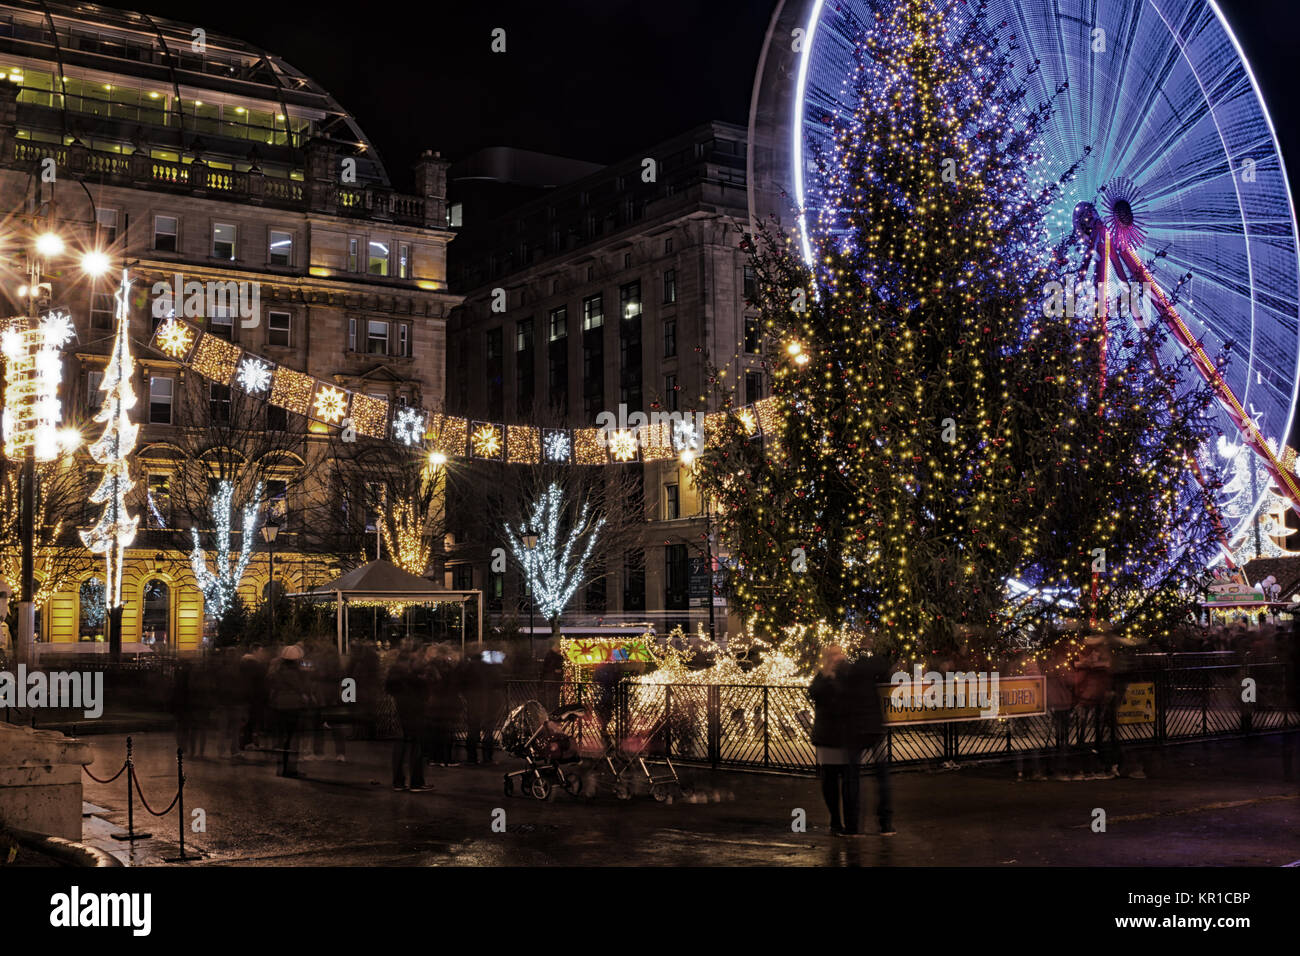 Weihnachtsbeleuchtung, Weihnachtsbaum und Fahrgeschäfte auf dem George Square, Glasgow, Großbritannien Stockfoto